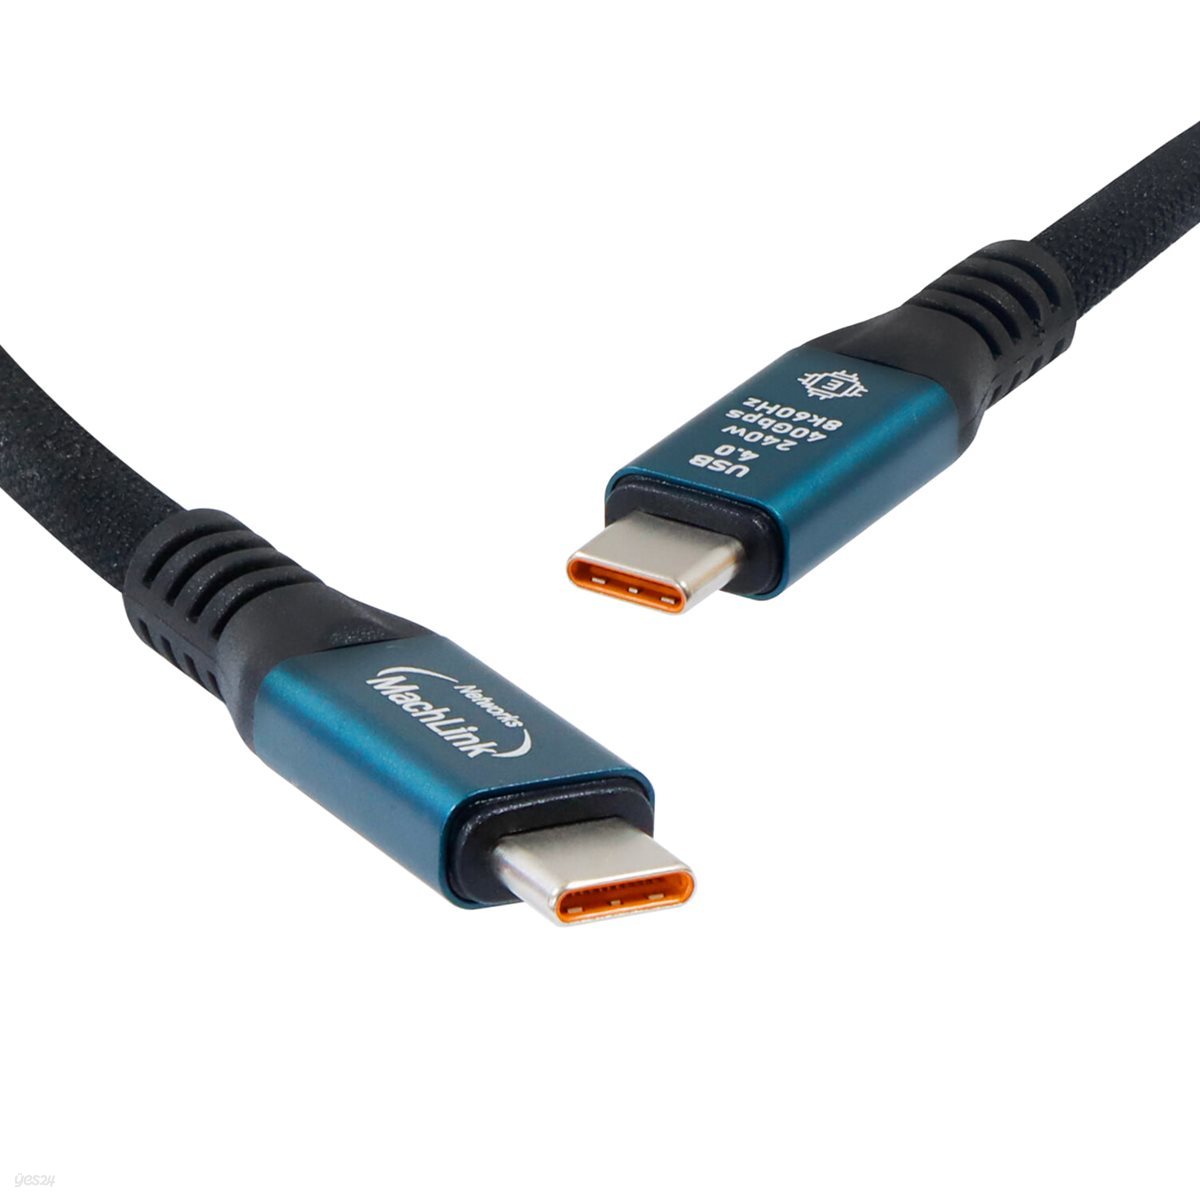 마하링크 USB 2.0 리피터 연장 케이블 30M ML-URP30